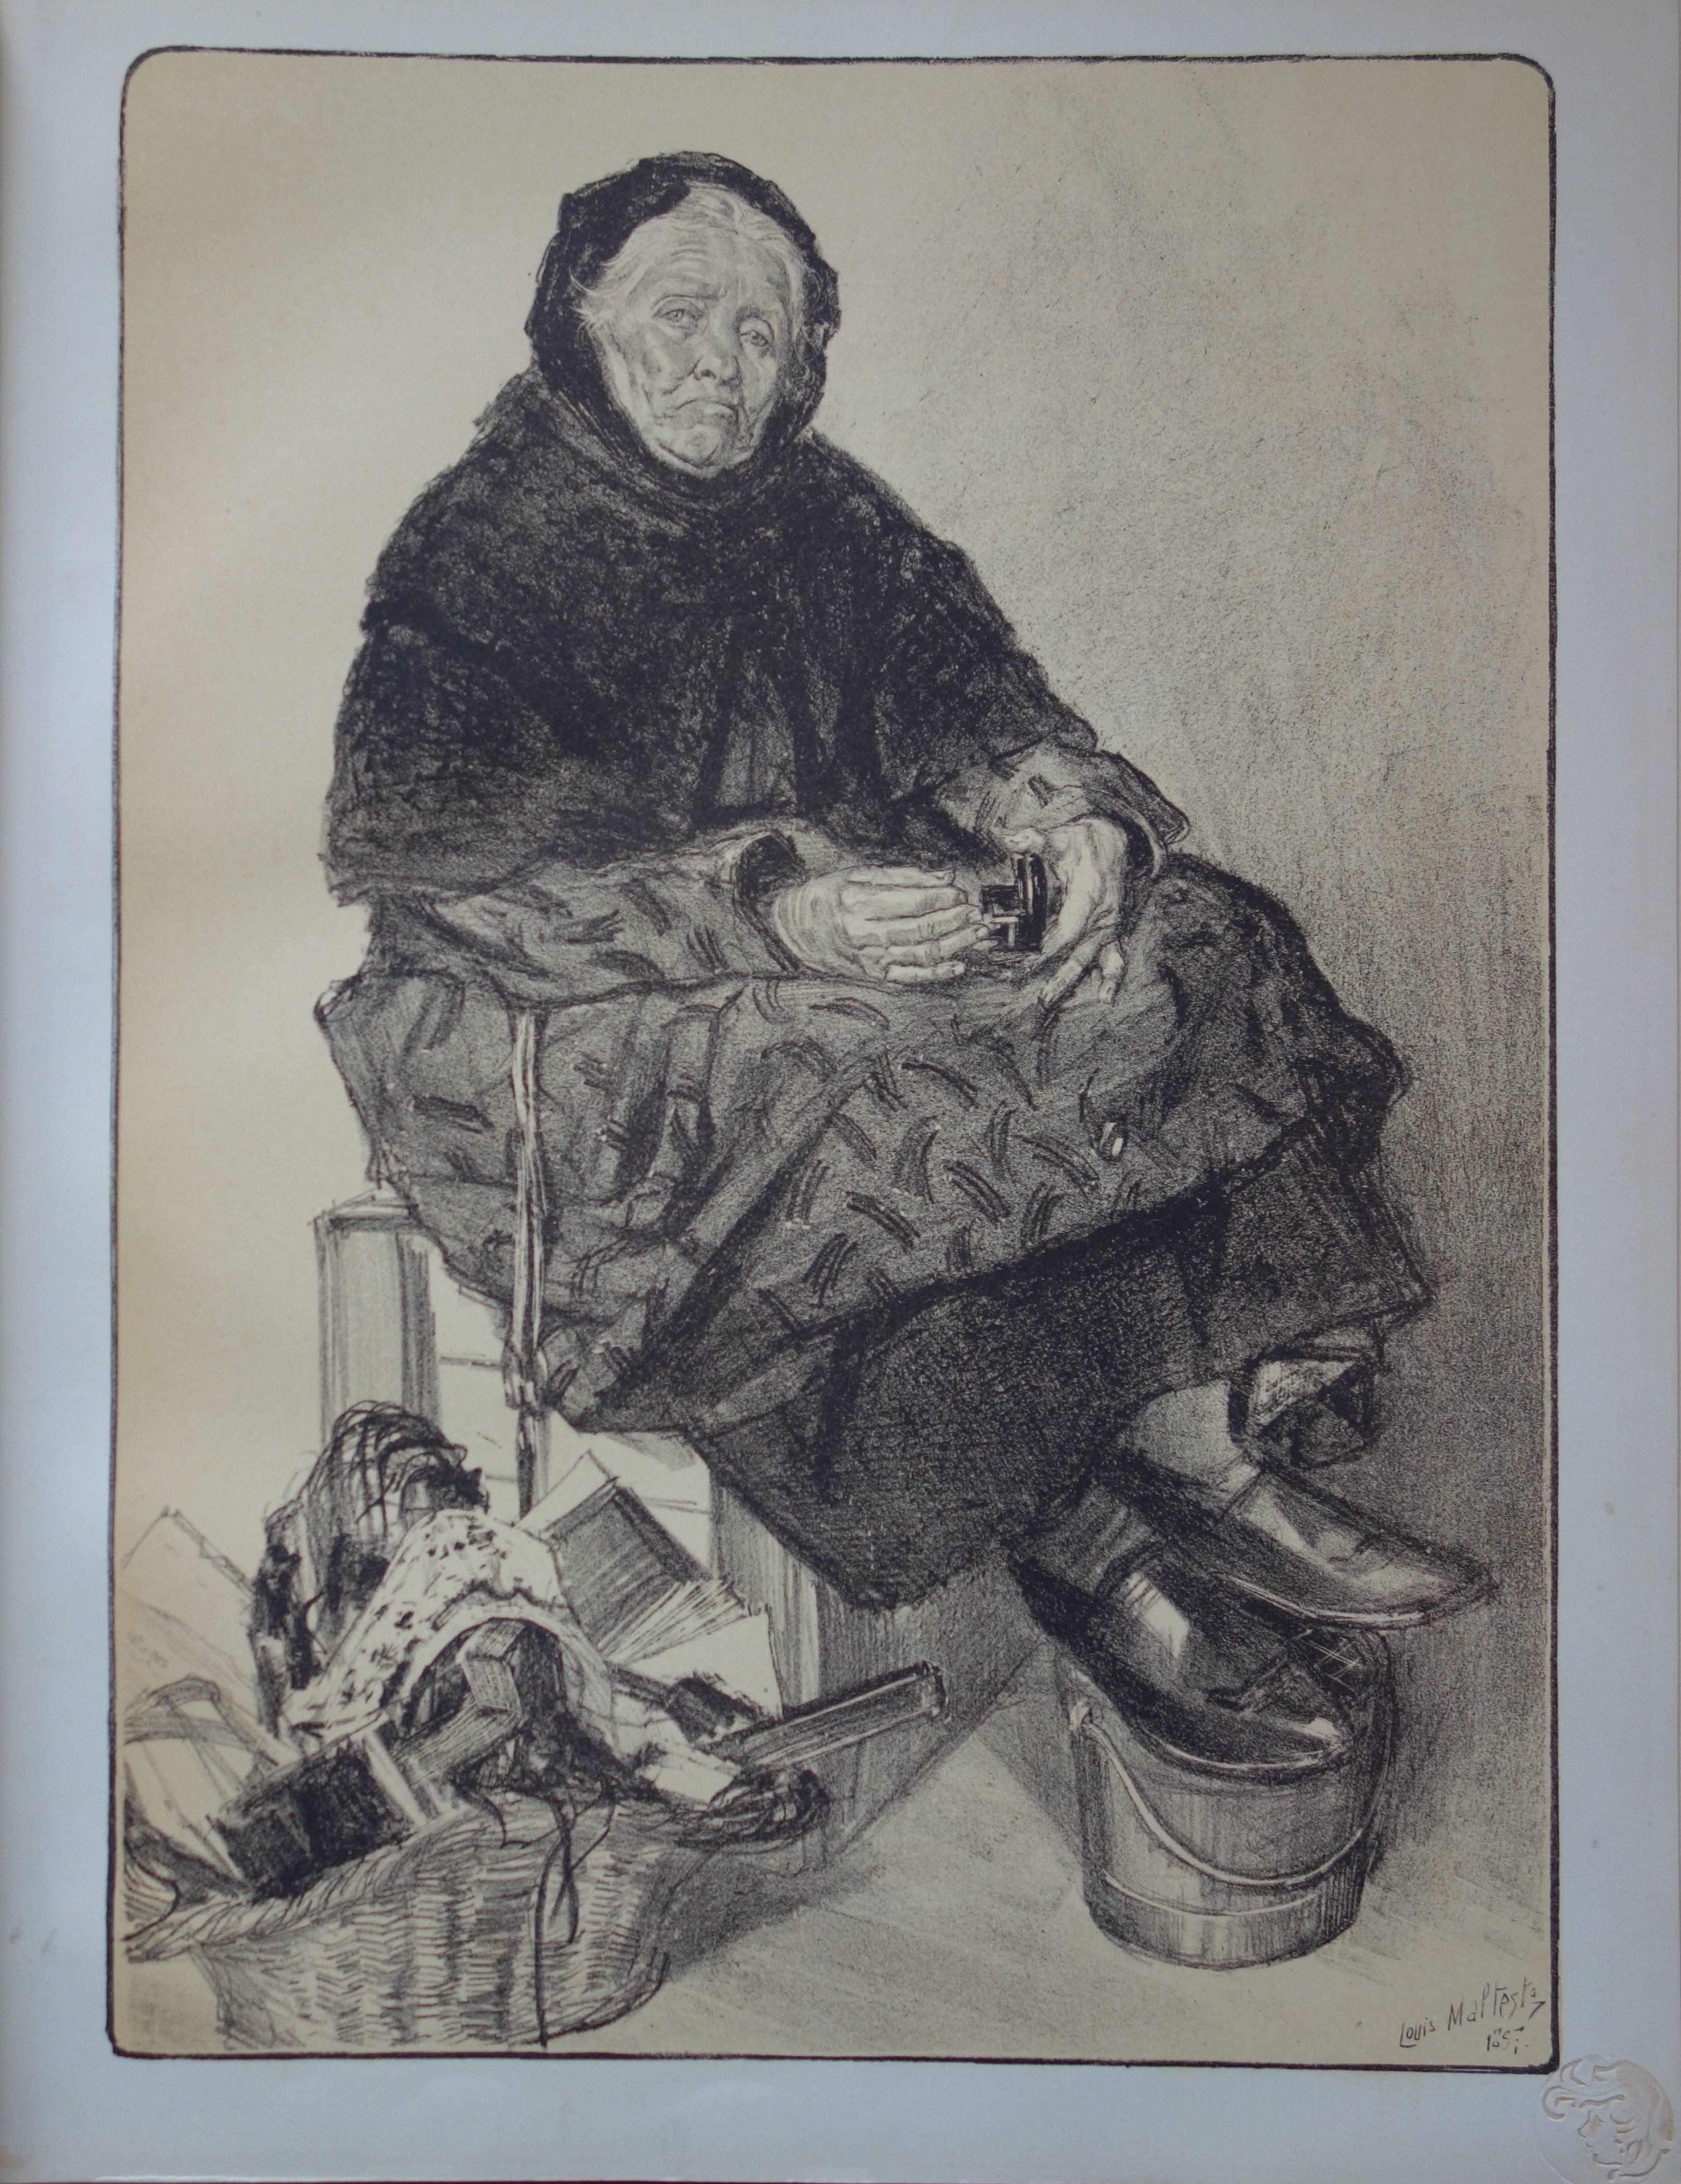 Louis Malteste Figurative Print - The Old Tradeswoman - original lithograph (1897-1898)